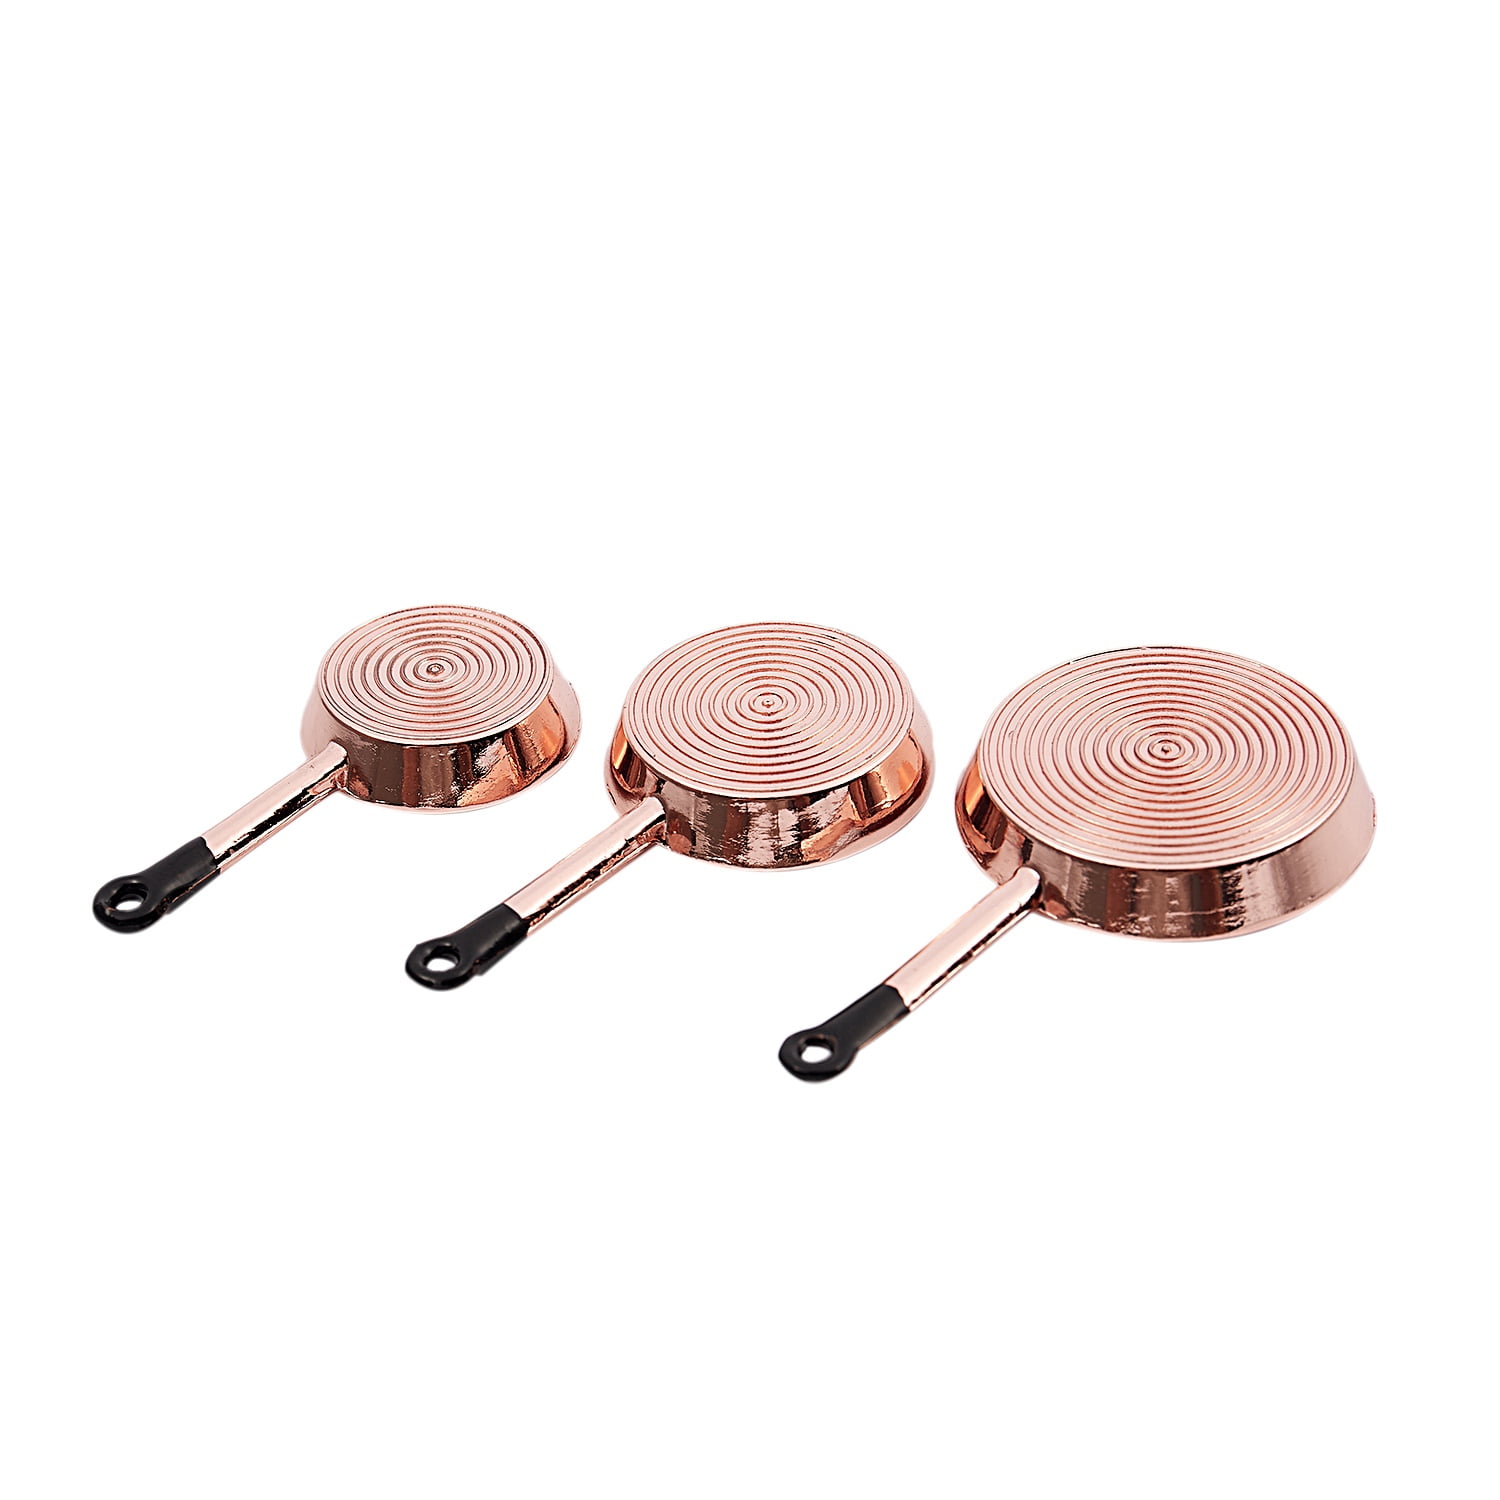 1/12 Scale 3pcs Dollhouse Miniature Metal Frying Pans Cooking Pot Cookware  P5S7